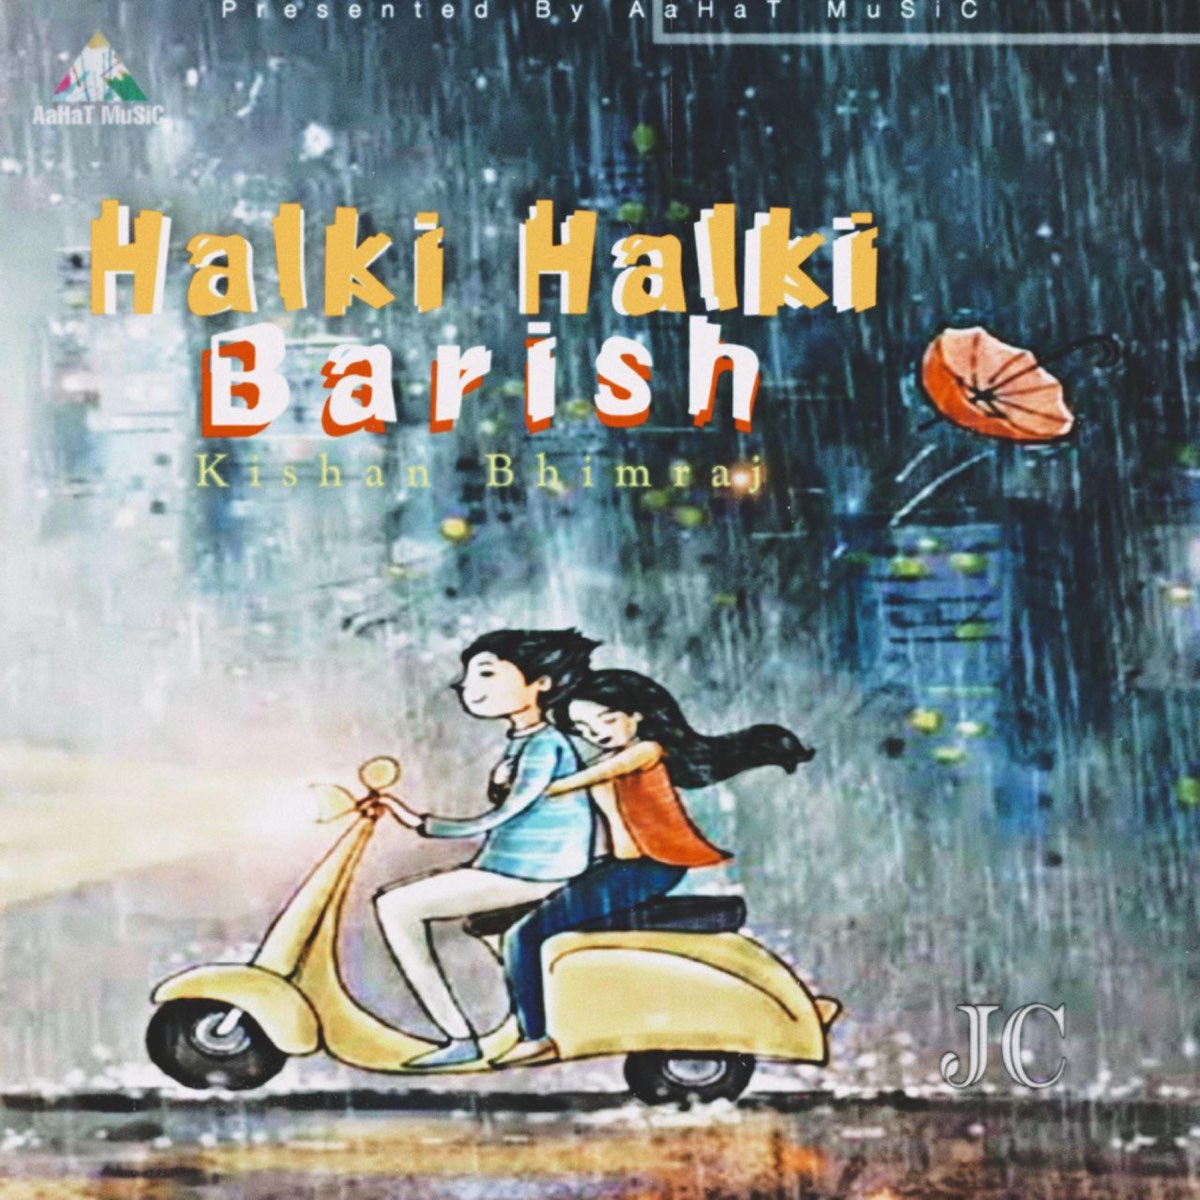 Halki Halki Barish - Single by Kishan Bhimraj on Apple Music